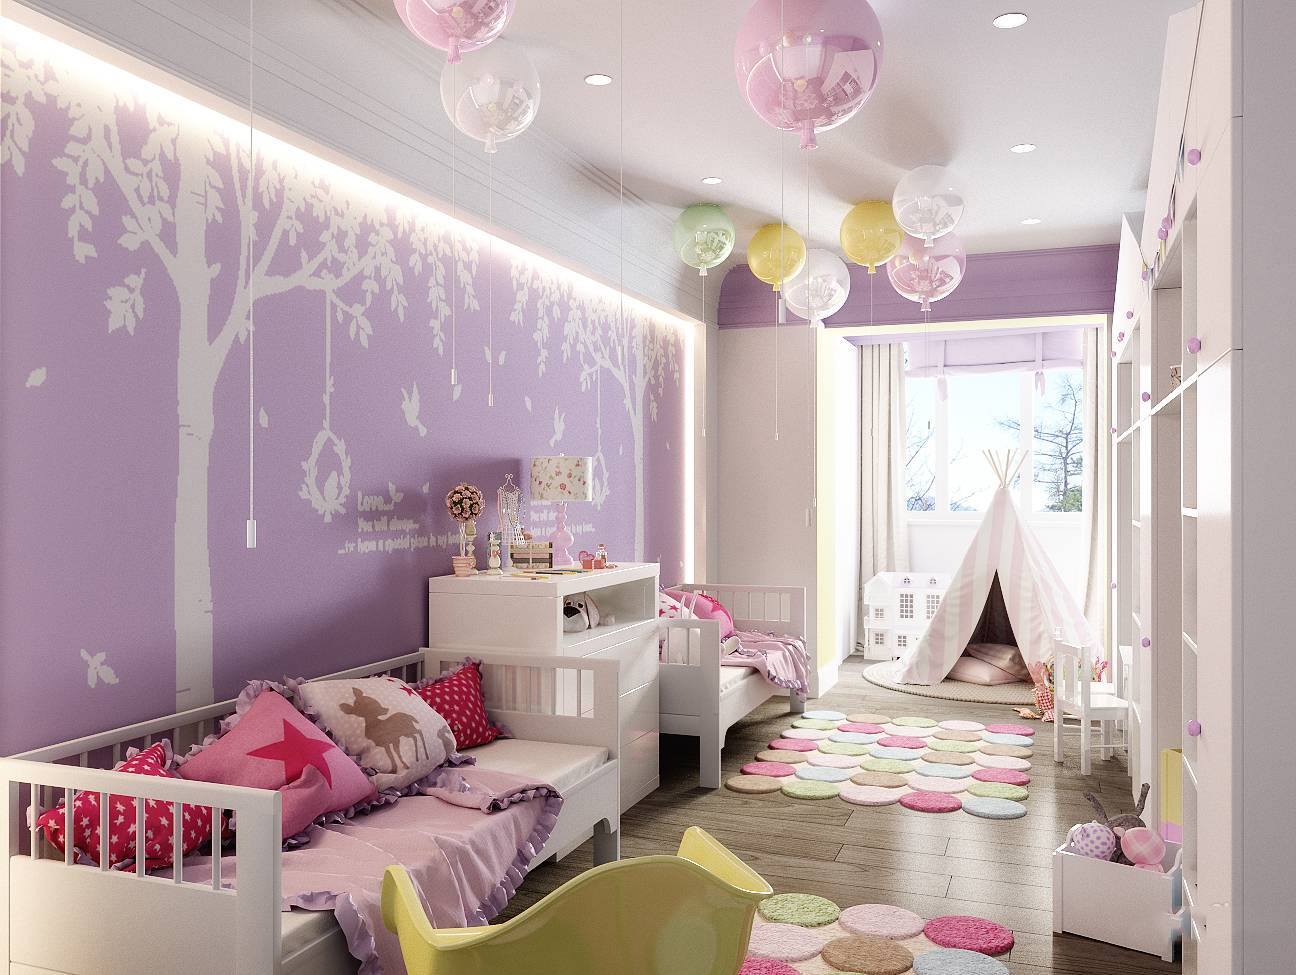 Обои для подростковой комнаты для девочки — цвет, стиль, выбор изображения, фото в интерьере